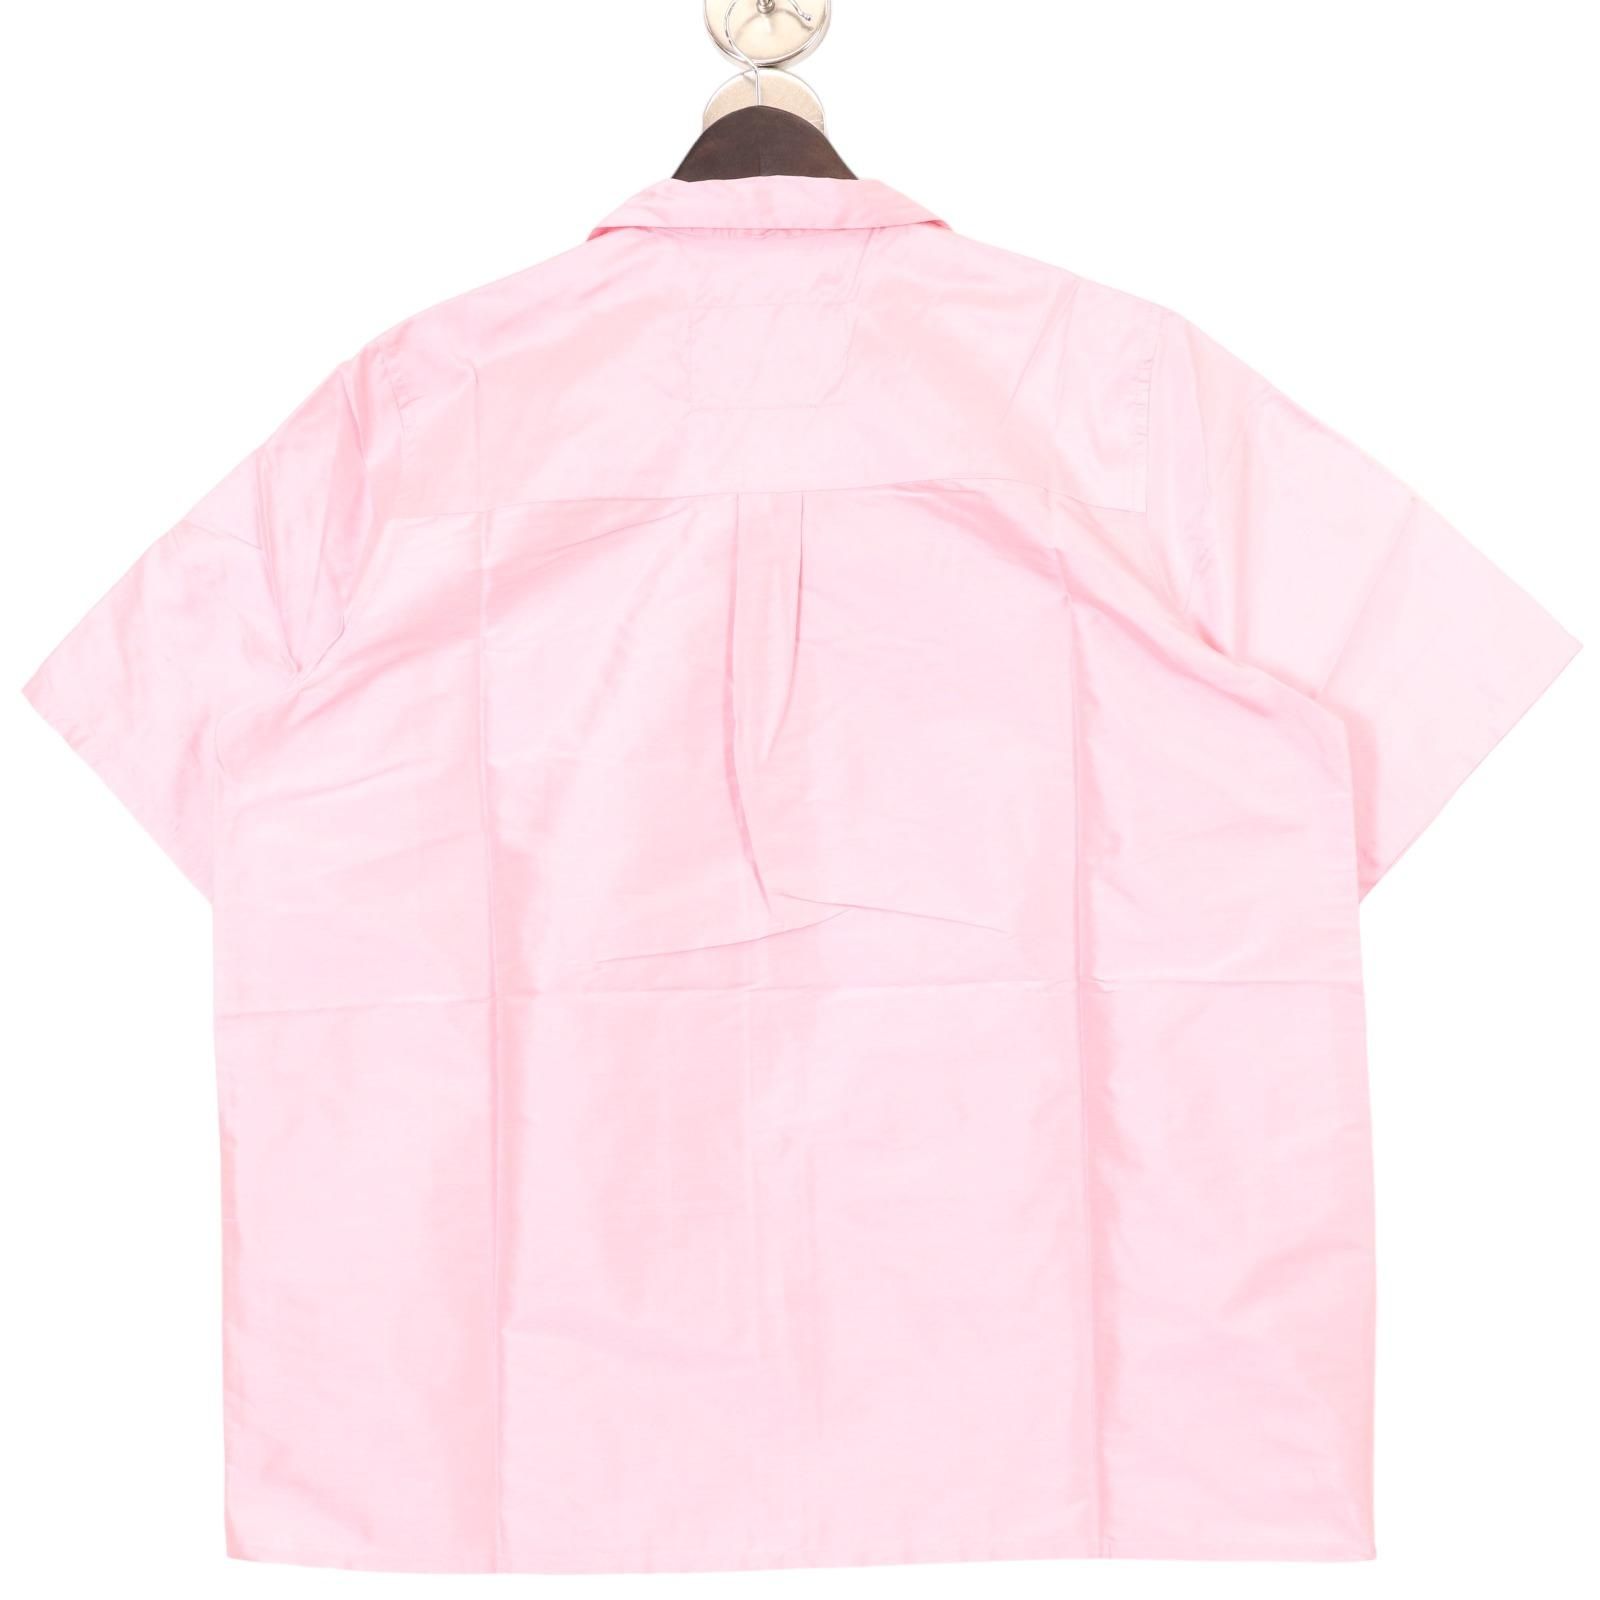 カミエルフォートヘンス ピンク オープンカラー スクール シルク半袖シャツ M